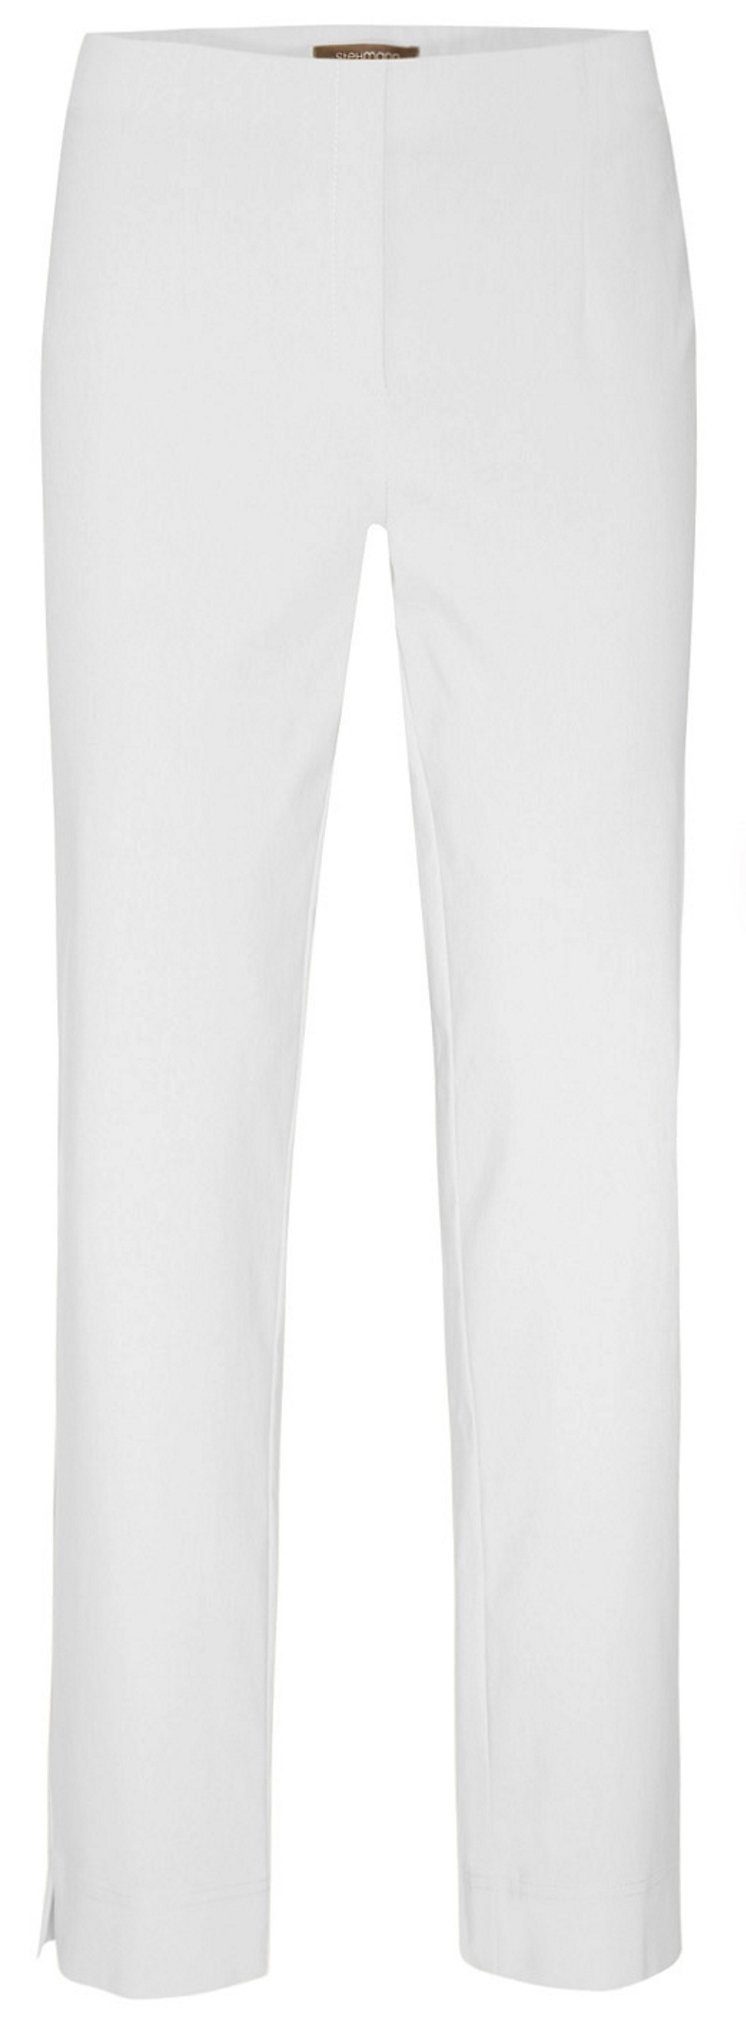 Weiße Stoffhosen für Damen online kaufen | OTTO